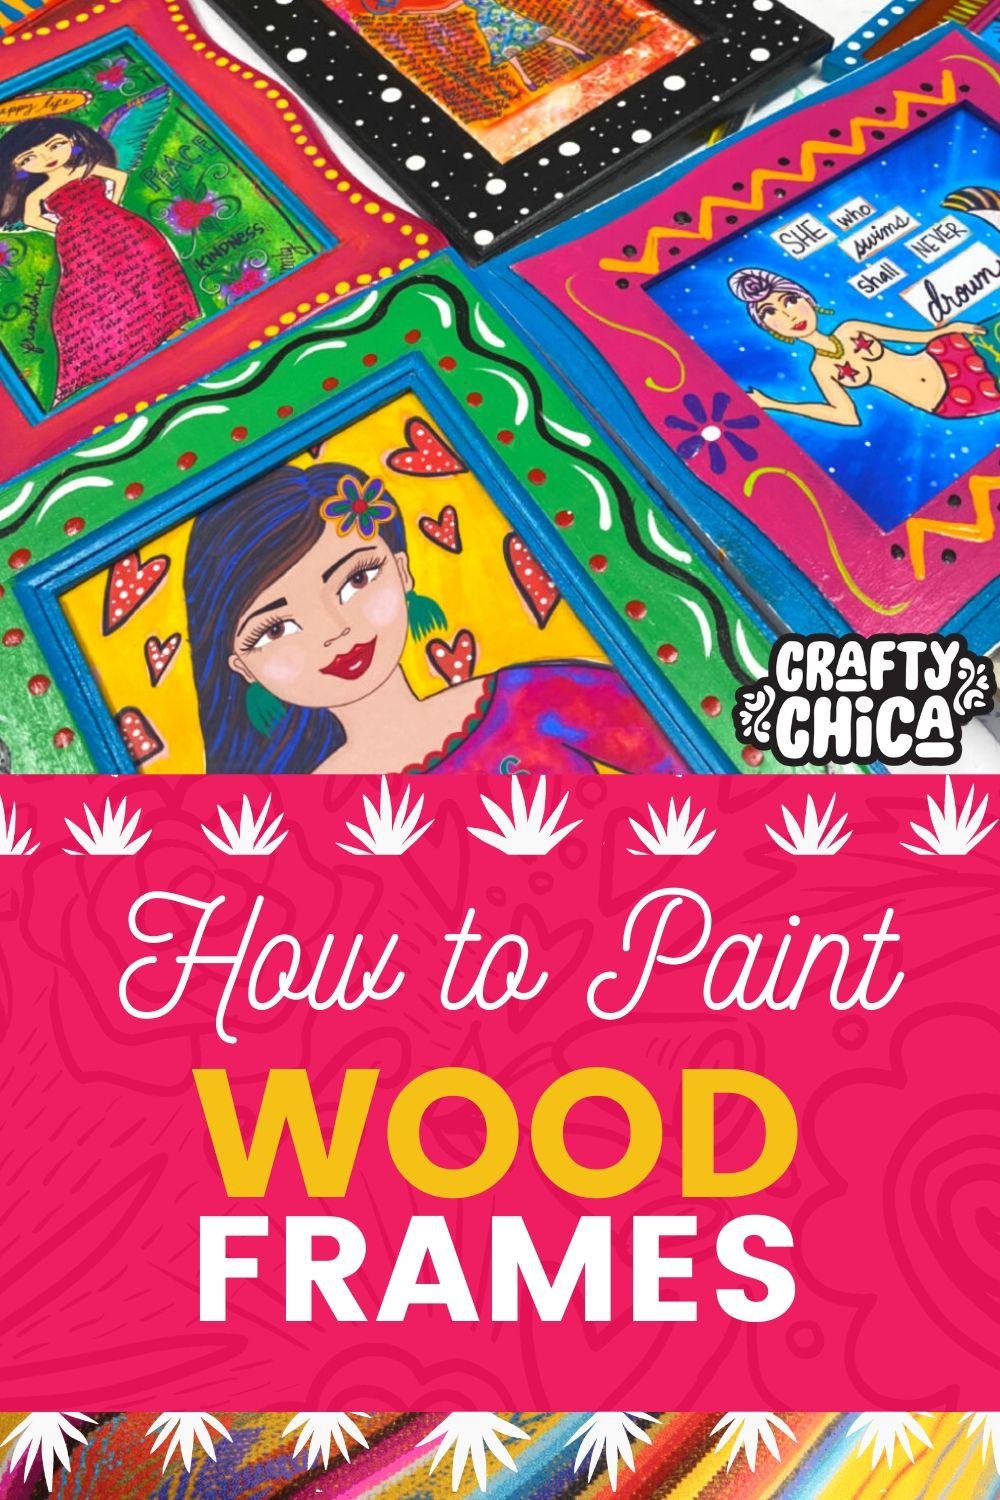 نحوه رنگ آمیزی قاب های چوبی #craftychica #دستگاه های چوبی